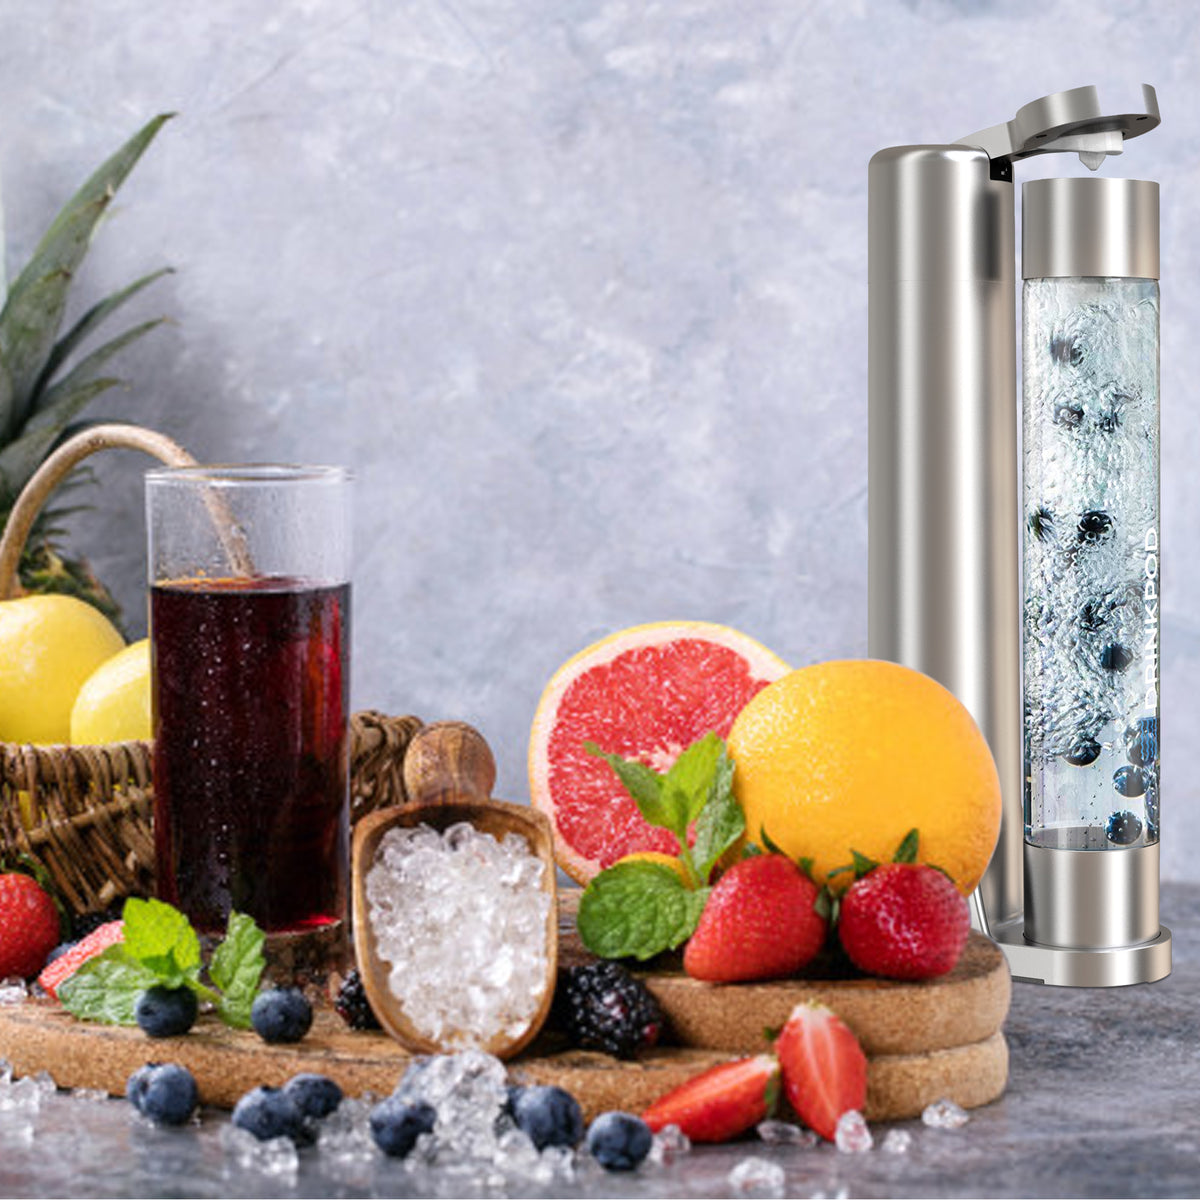 FIZZPod 1+ Soda Maker + Stur Water Flavor Enhancemer Pack